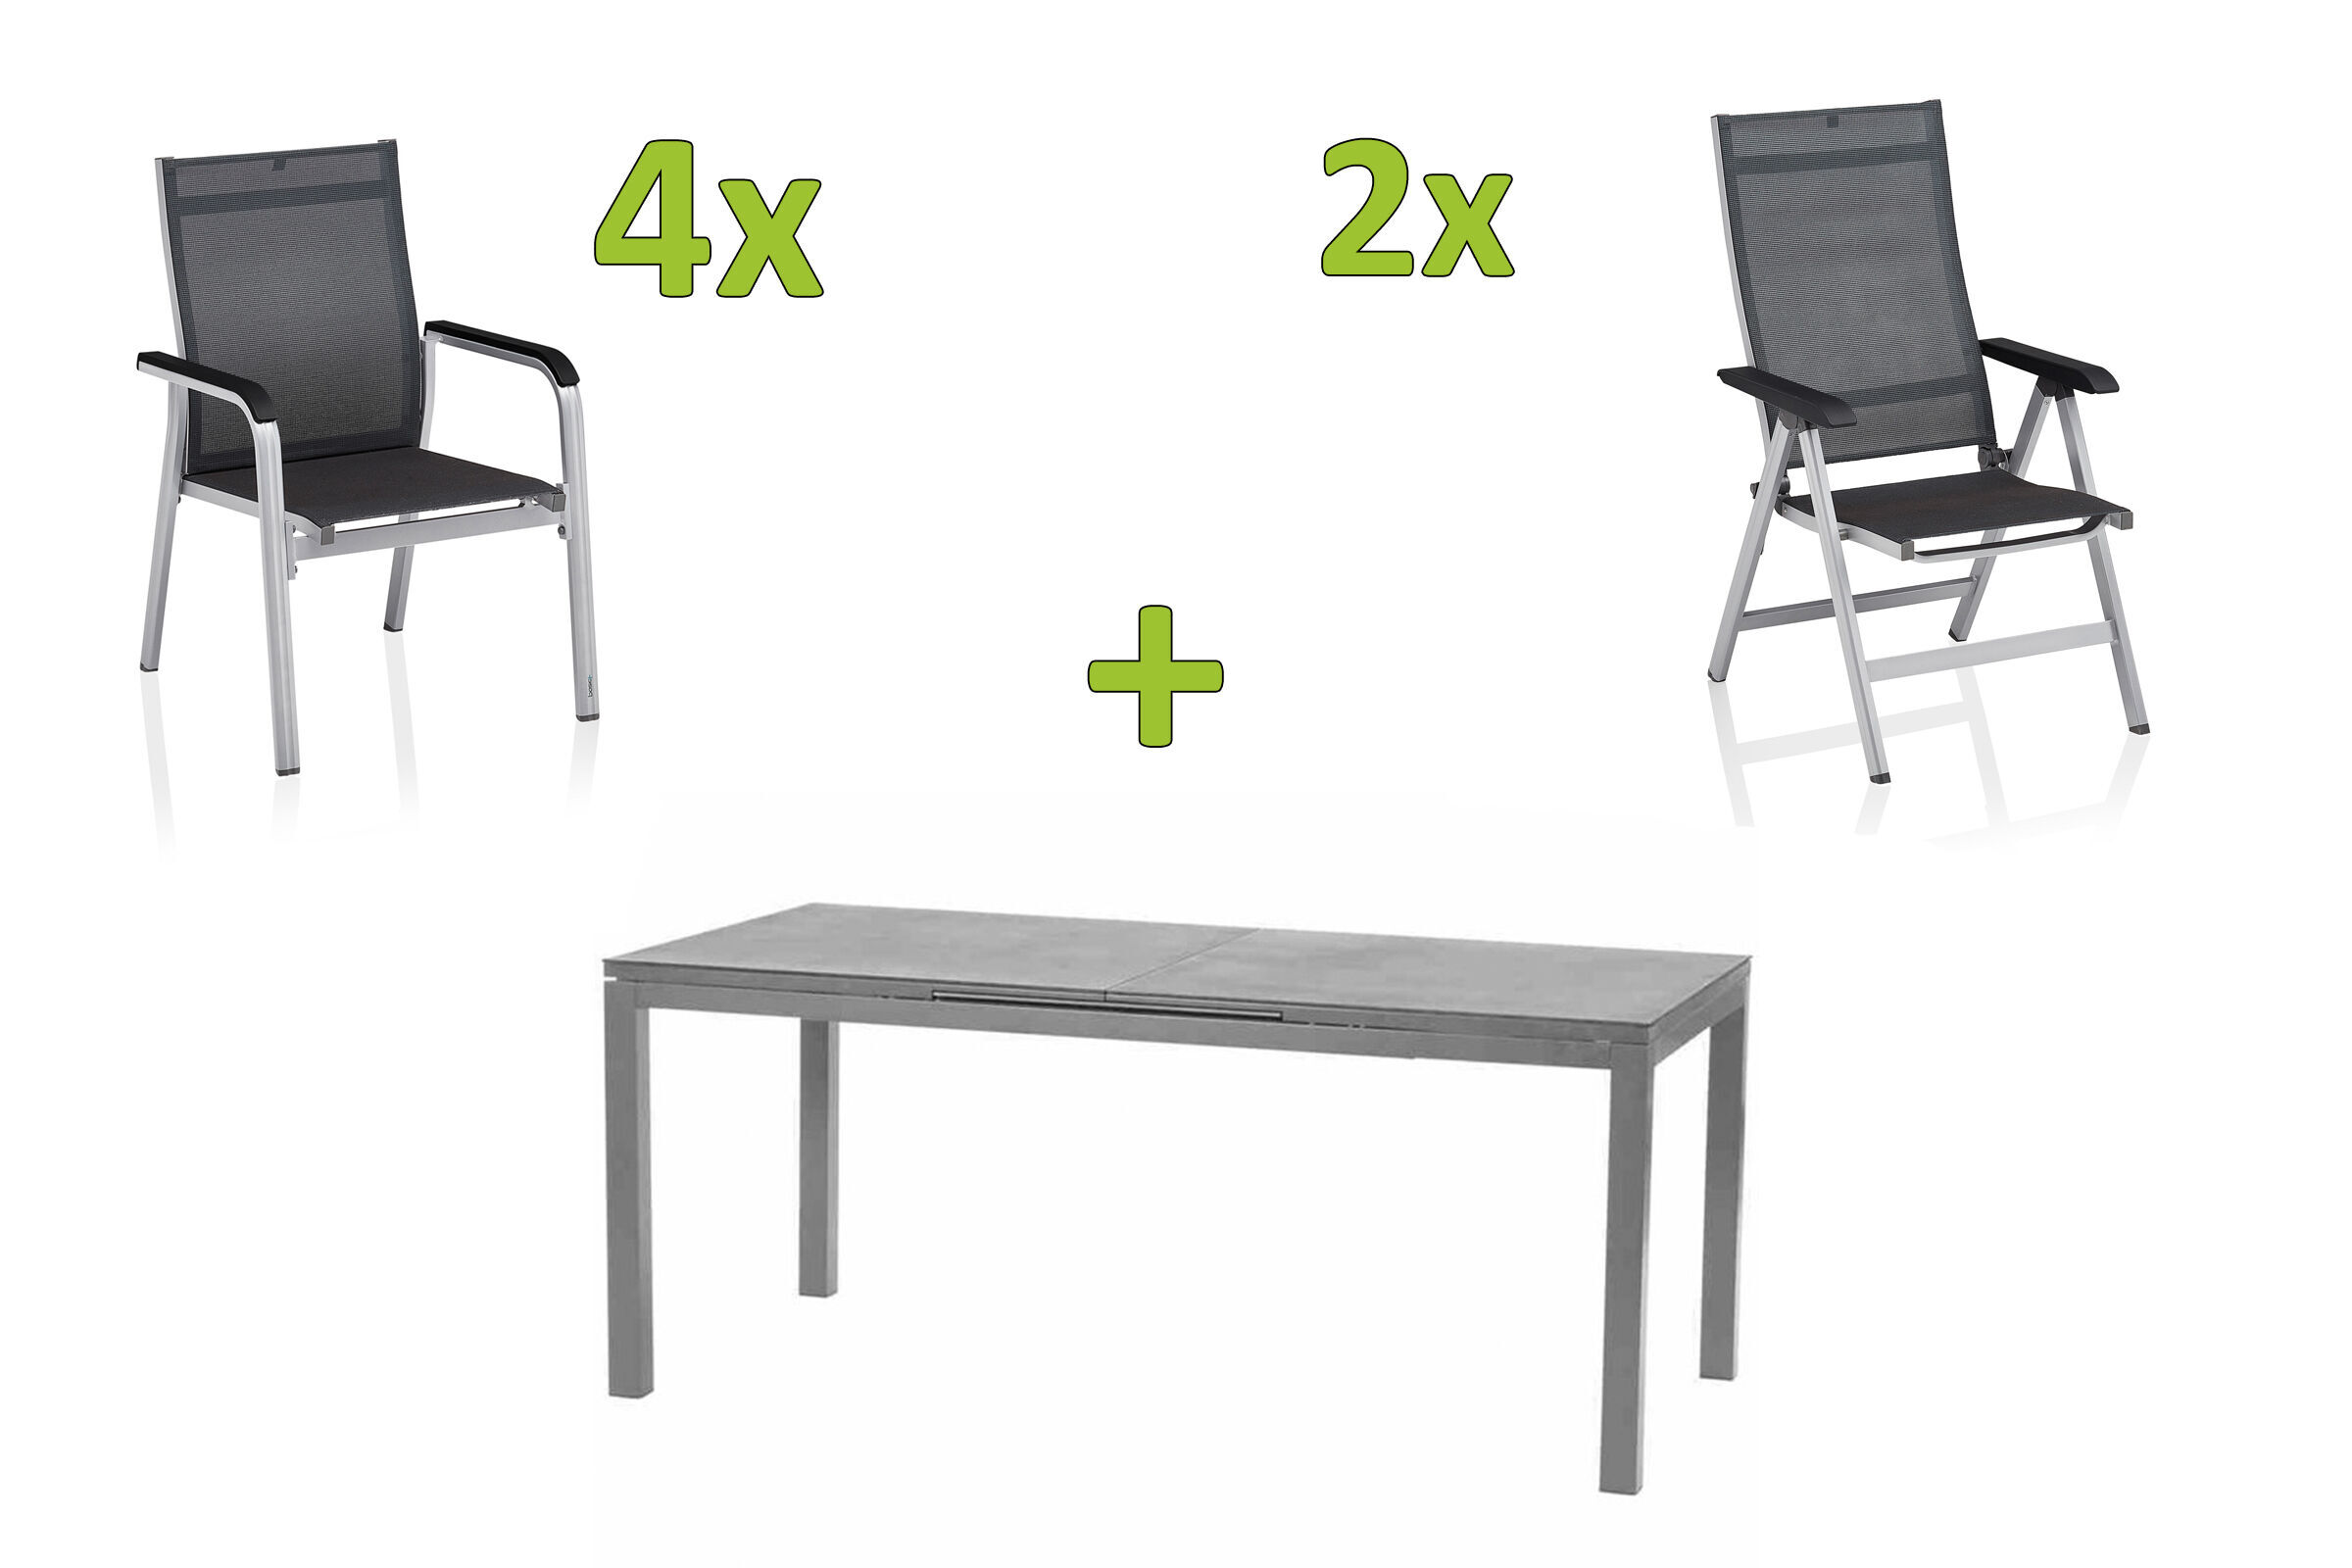 KETTLER BasicPlus Premium Sitzgruppe, silber, Alu/Spraystone, Tisch 180/240×90 cm, 4 Stapelsessel-,4 Multipositionsessel